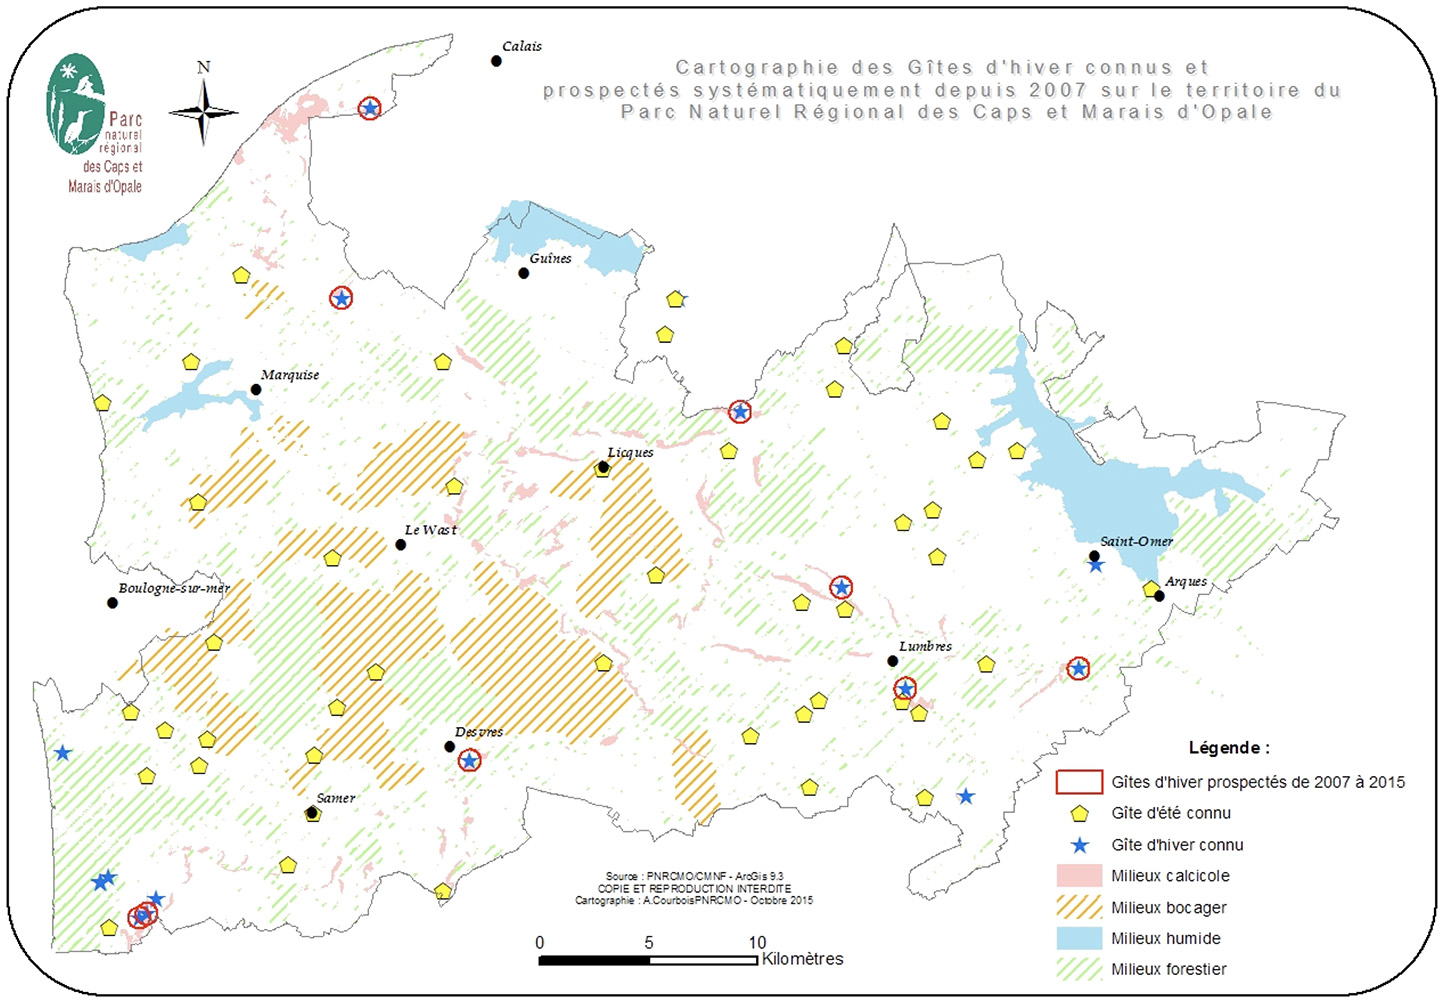 Localisation des sites d'hibernation et gîtes suivis annuellement (source: PNRCMO, 2015)